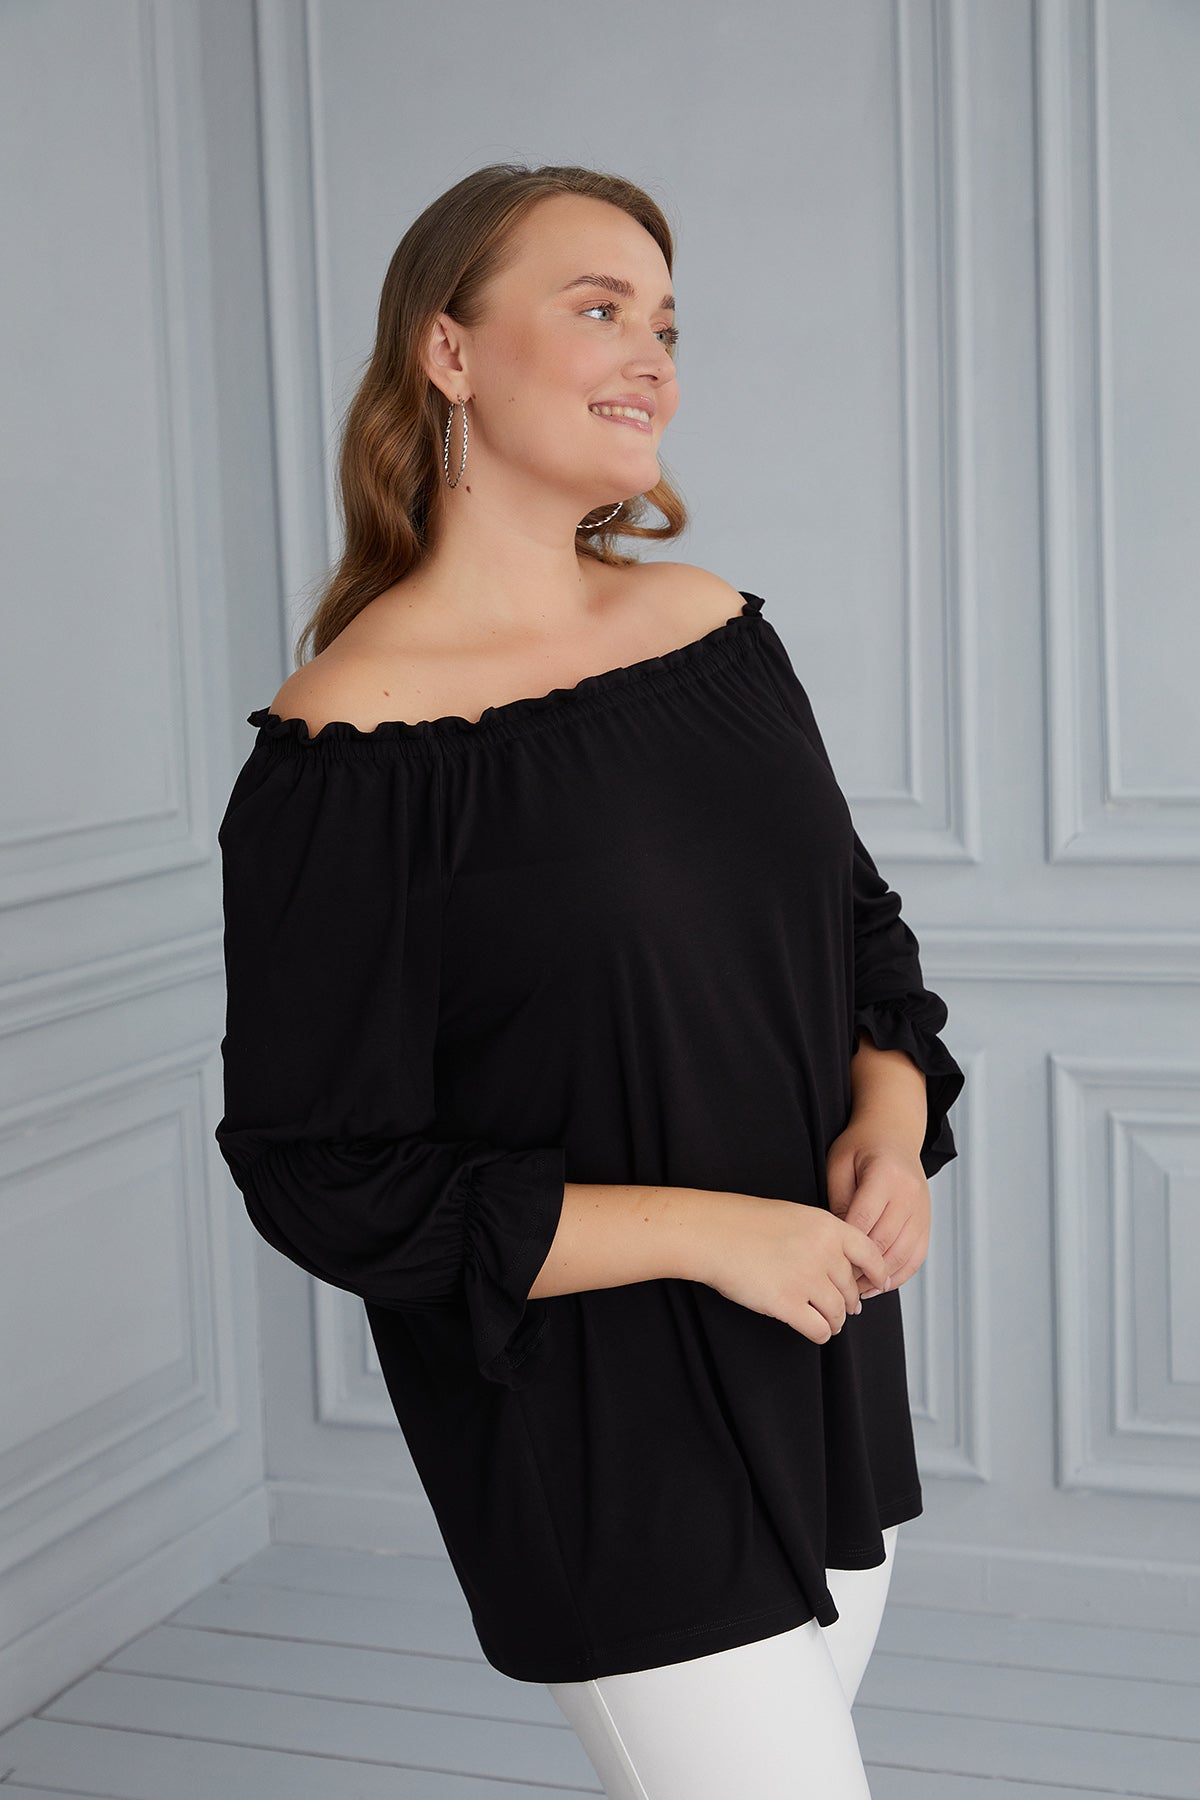 Γυναικεία μπλούζα "Κάρμεν" σε μεγάλα μεγέθη - Μαύρο